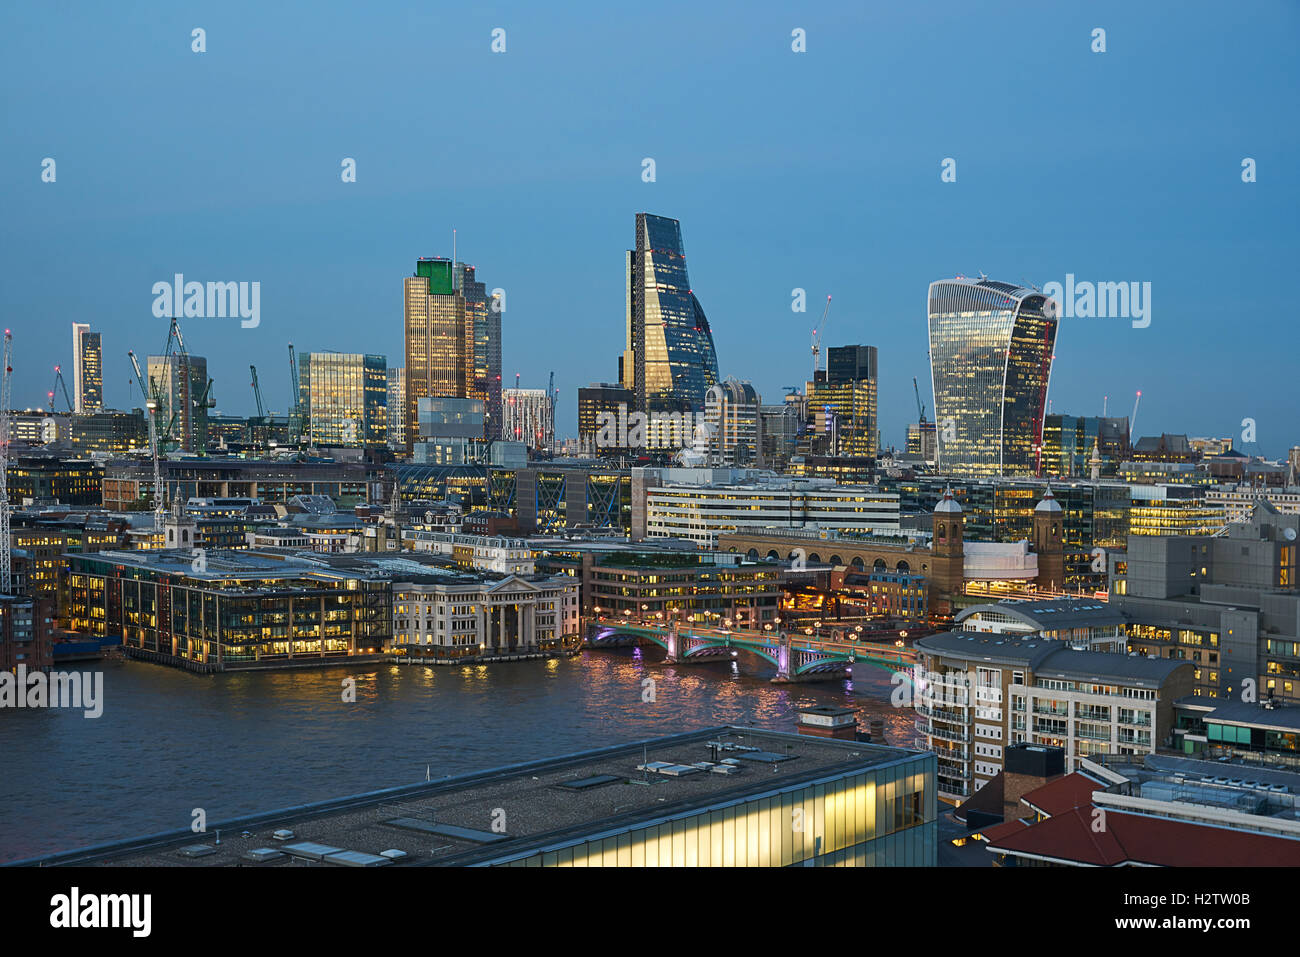 Der Londoner Skyline.   Bankenviertel.  London bei Nacht.  Wolkenkratzer Hochhäuser. Stockfoto